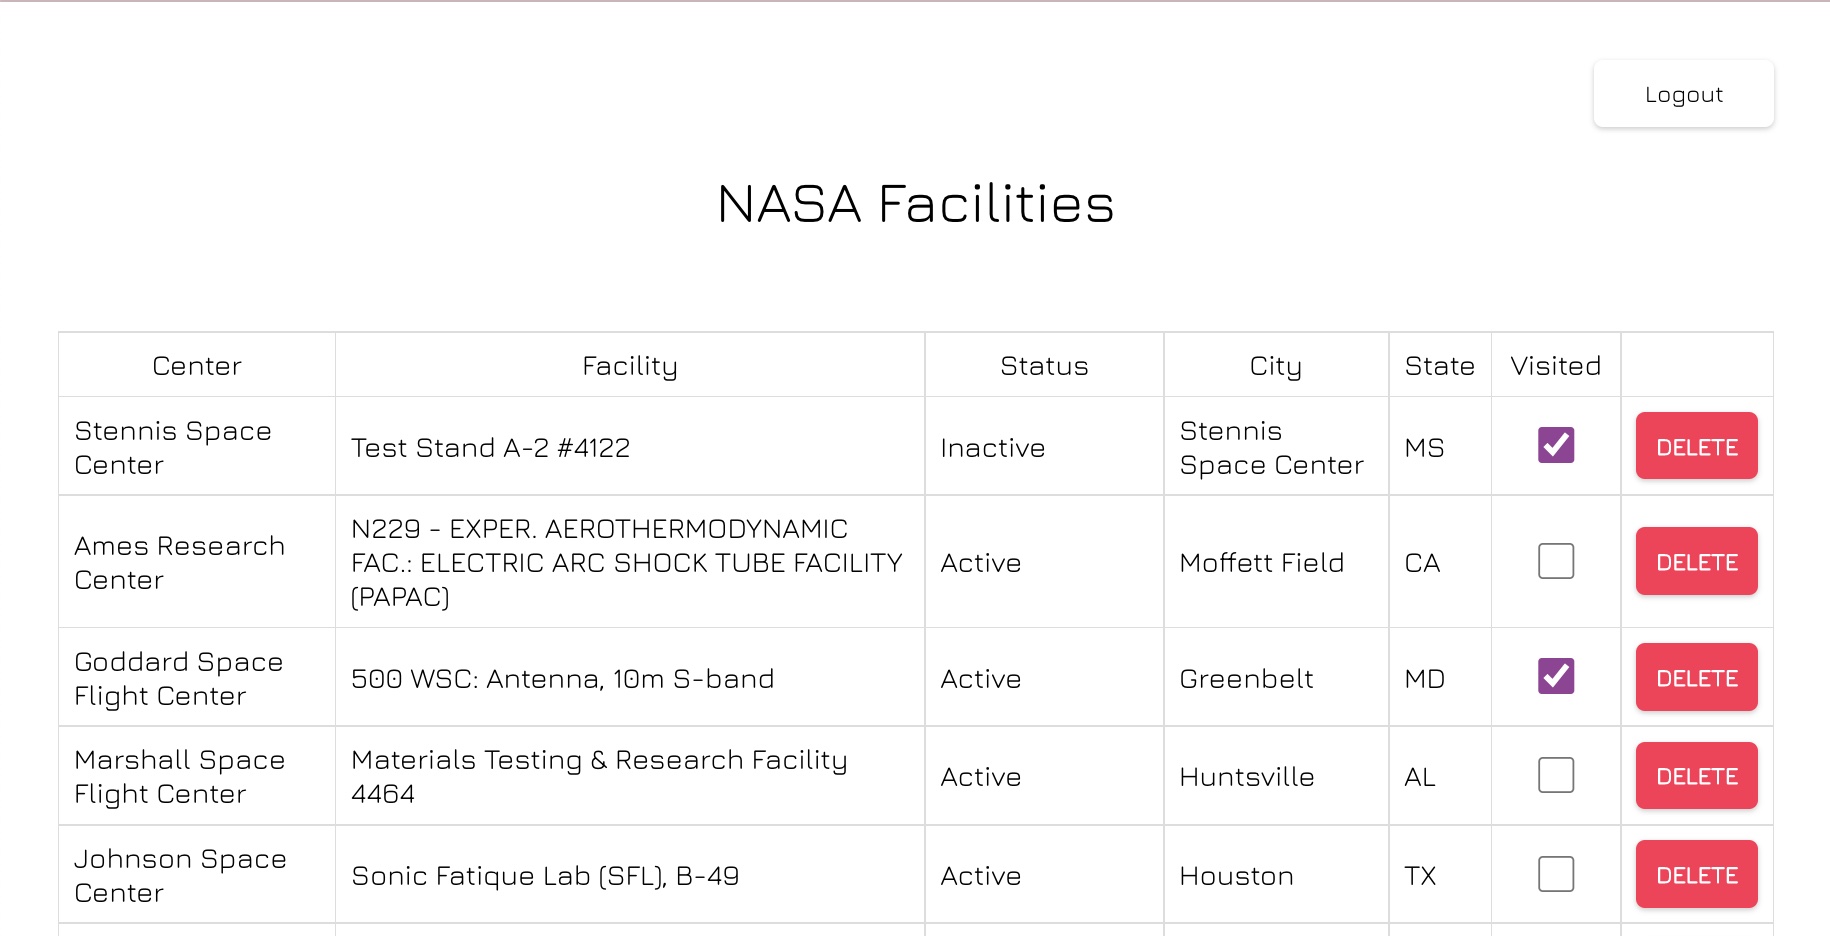 Screenshot of table with nasa facilities data